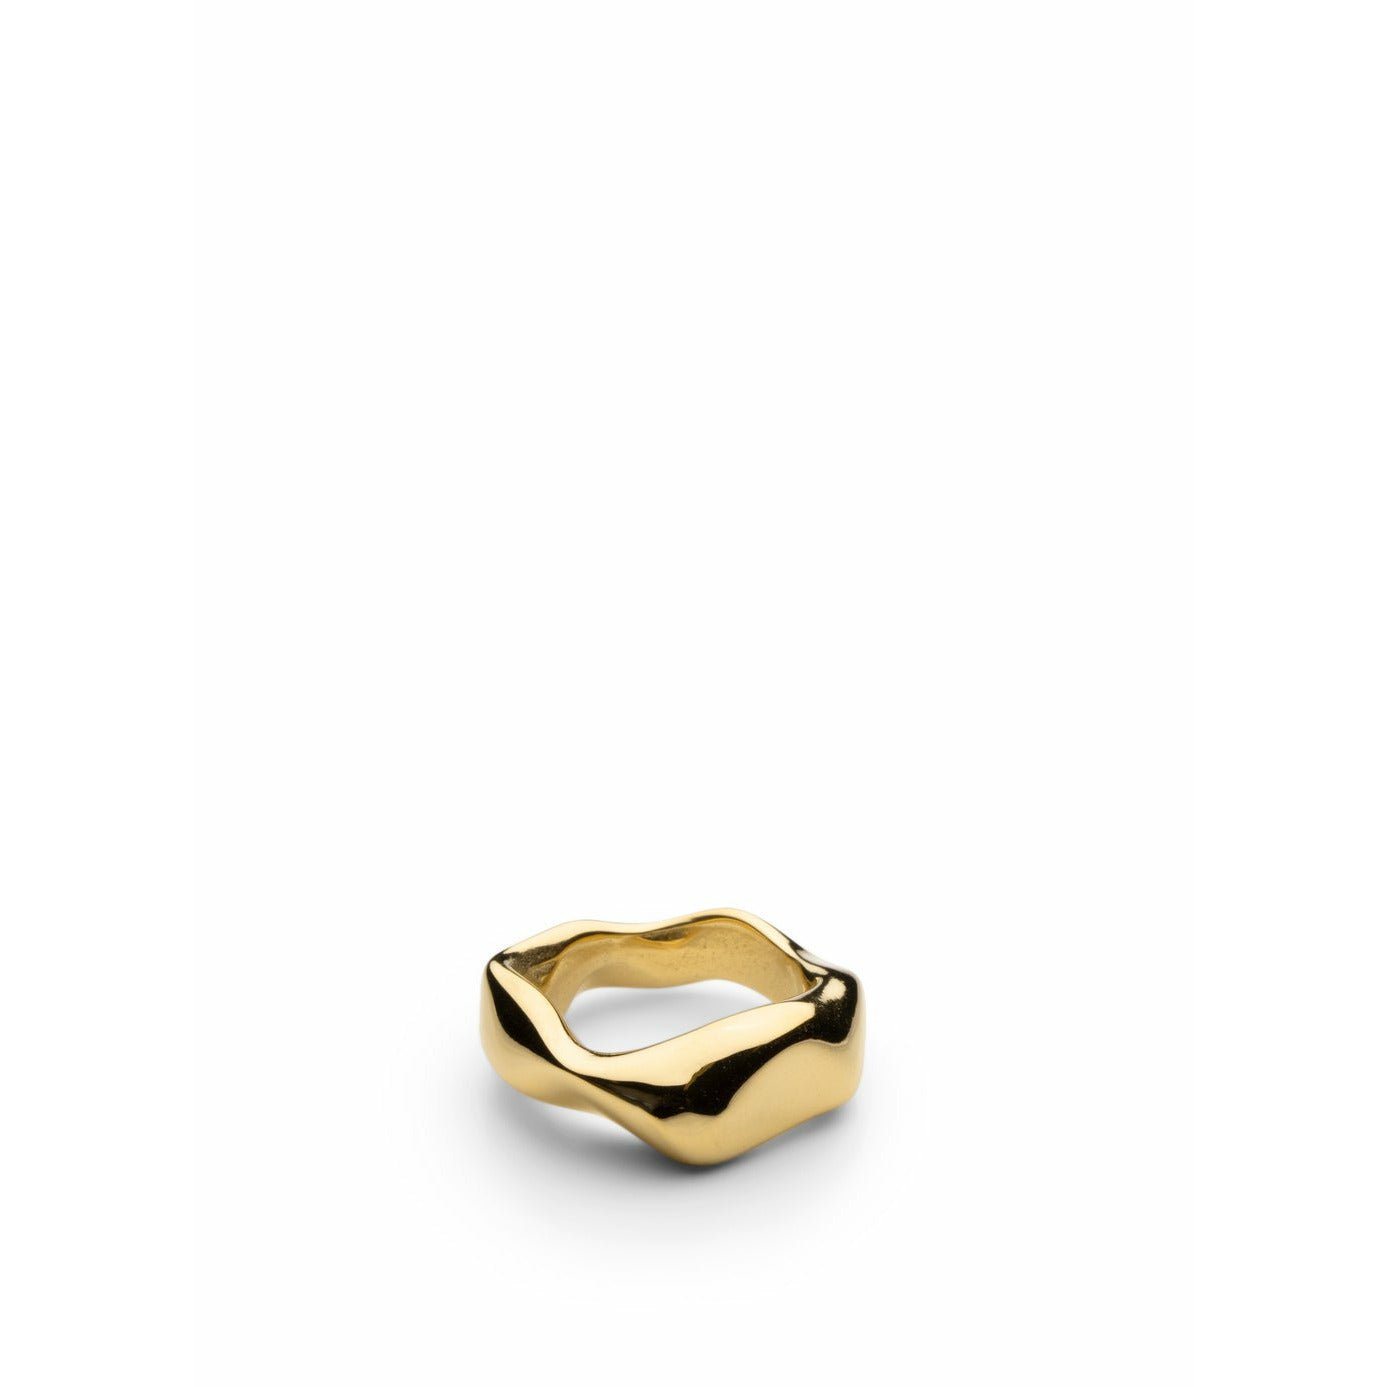 Skultuna Dikke petit ring groot goud vergulde, Ø1,97 cm